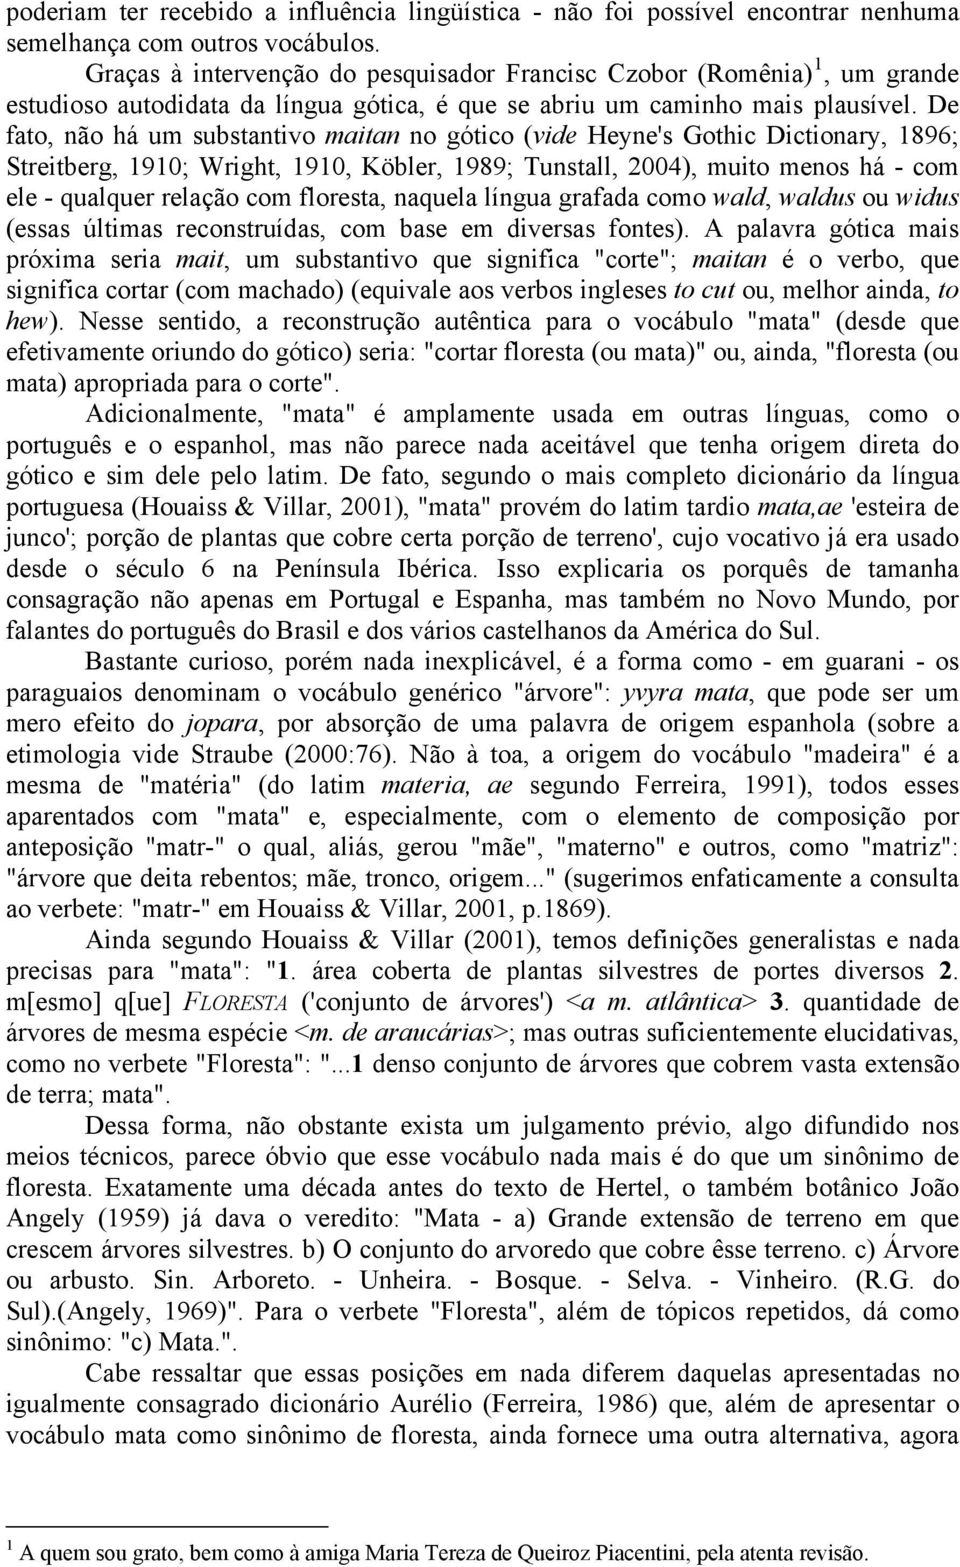 De fato, não há um substantivo maitan no gótico (vide Heyne's Gothic Dictionary, 1896; Streitberg, 1910; Wright, 1910, Köbler, 1989; Tunstall, 2004), muito menos há - com ele - qualquer relação com